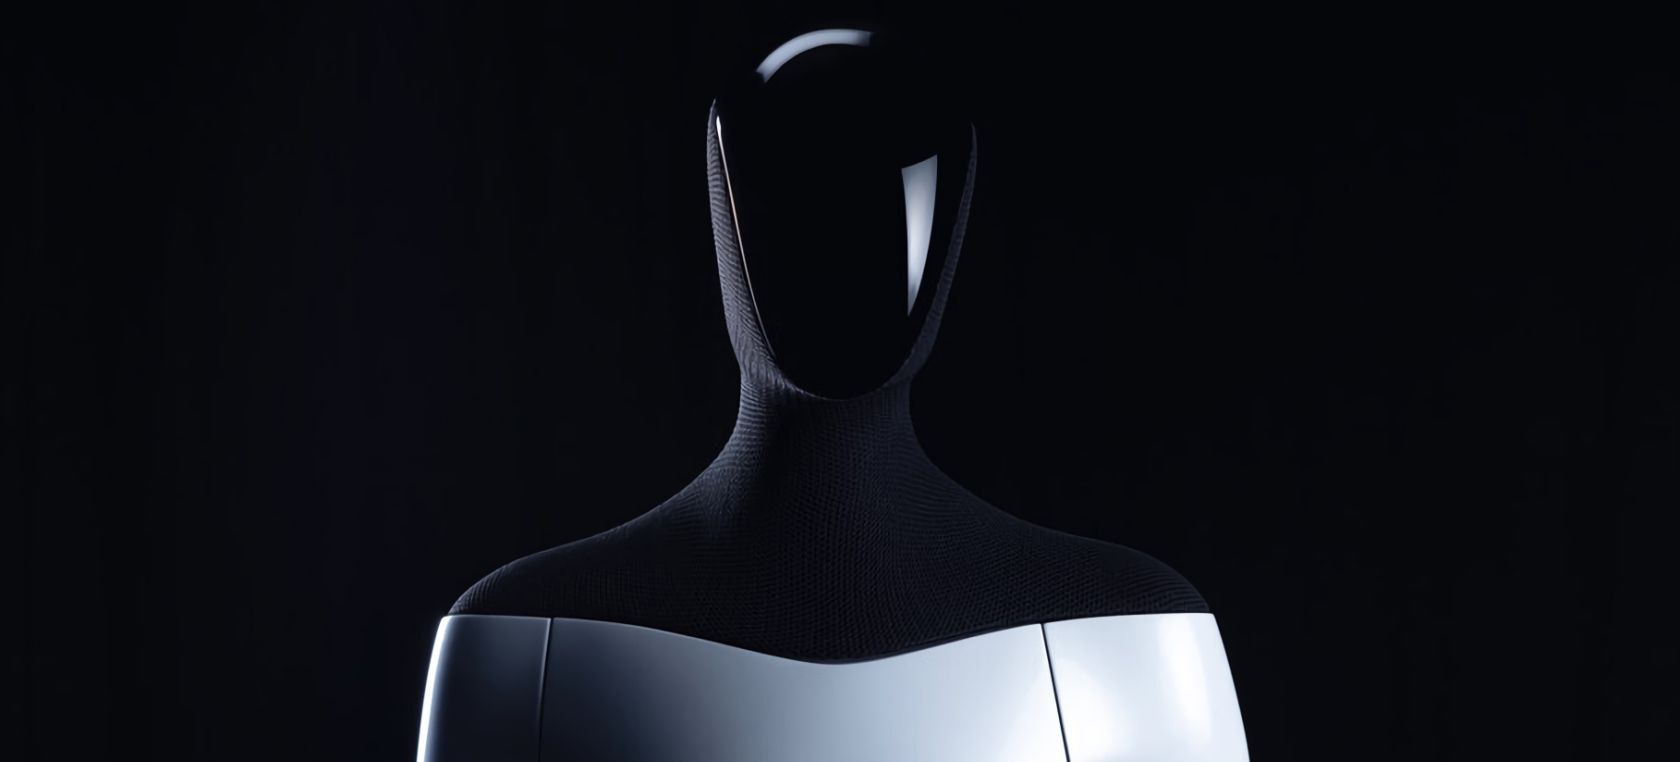 Elon Musk fabricará un robot humanoide. Presenta a un hombre disfrazado de robot